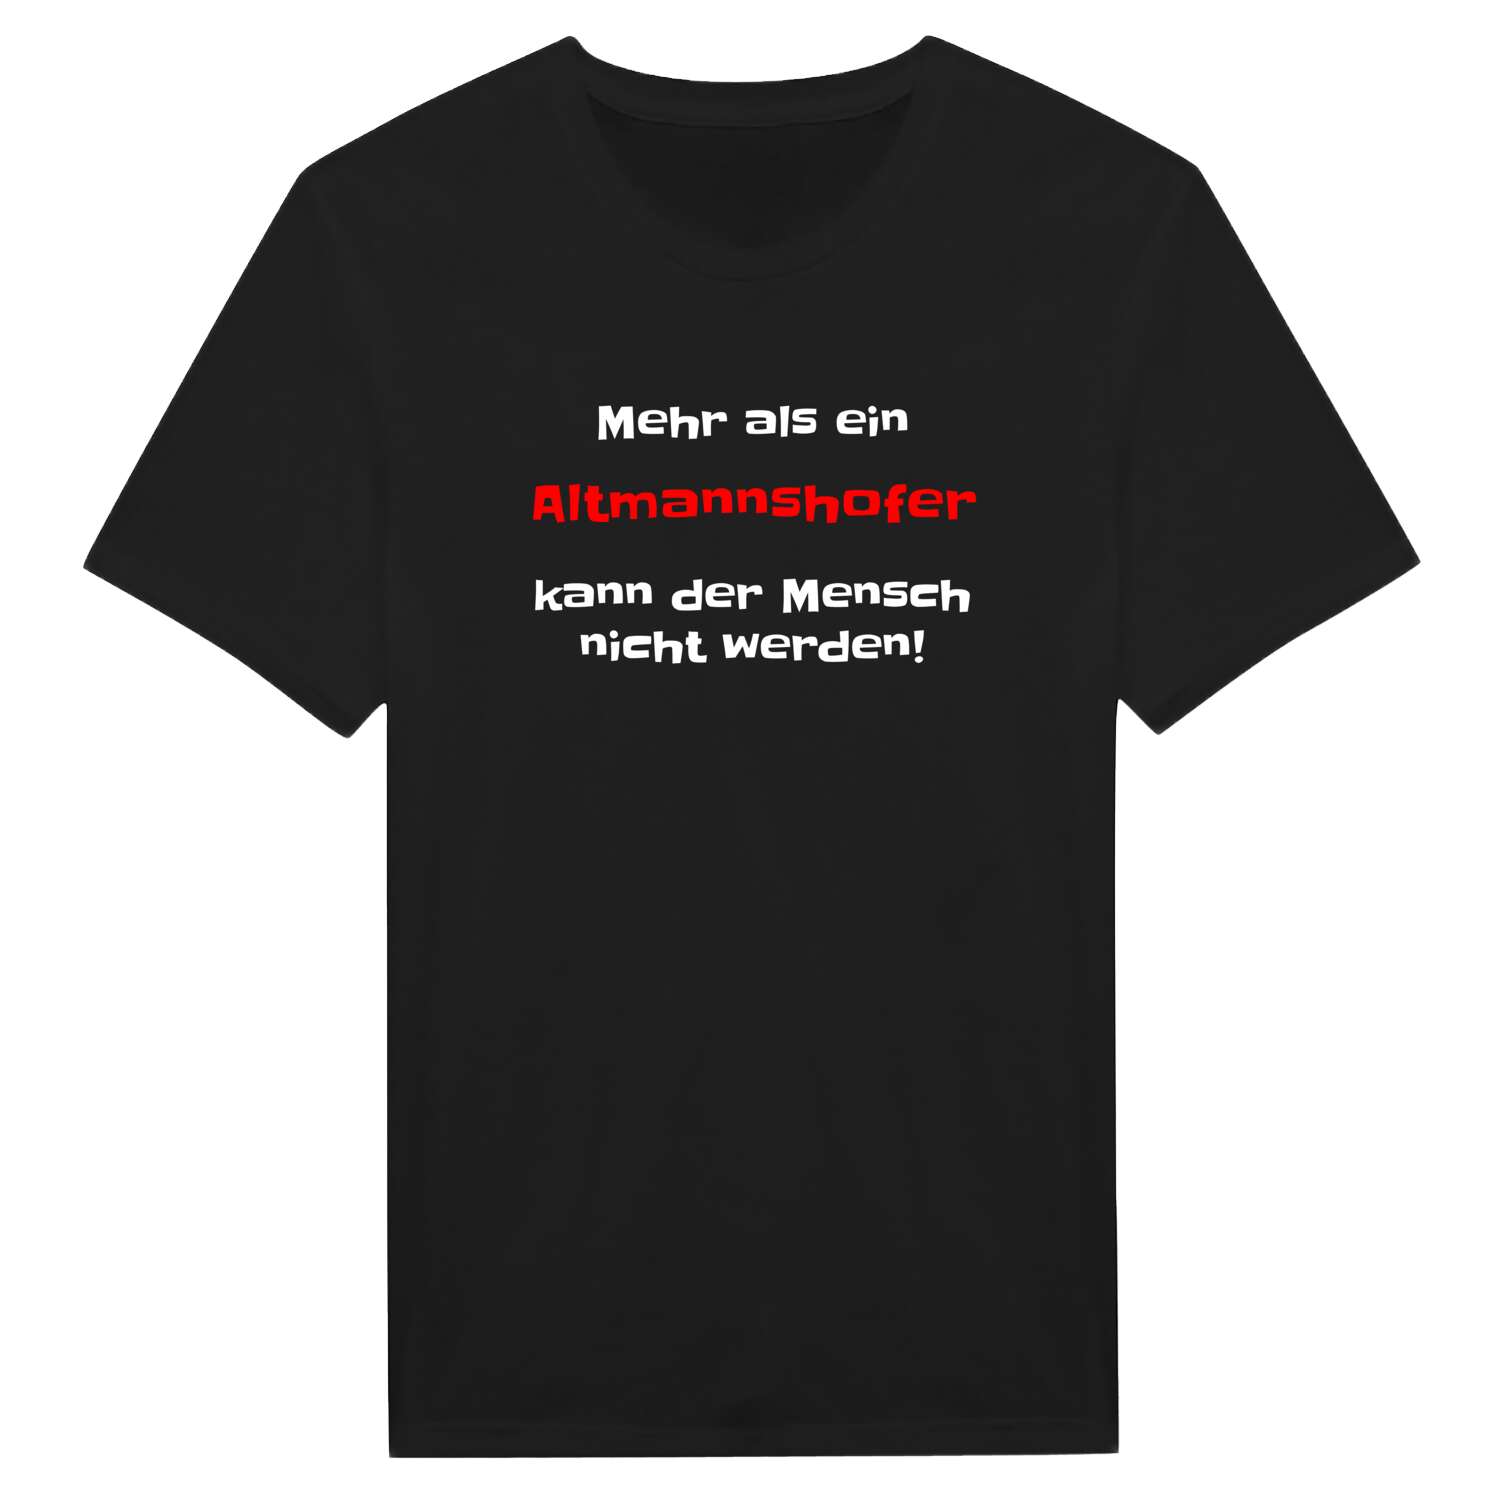 Altmannshof T-Shirt »Mehr als ein«